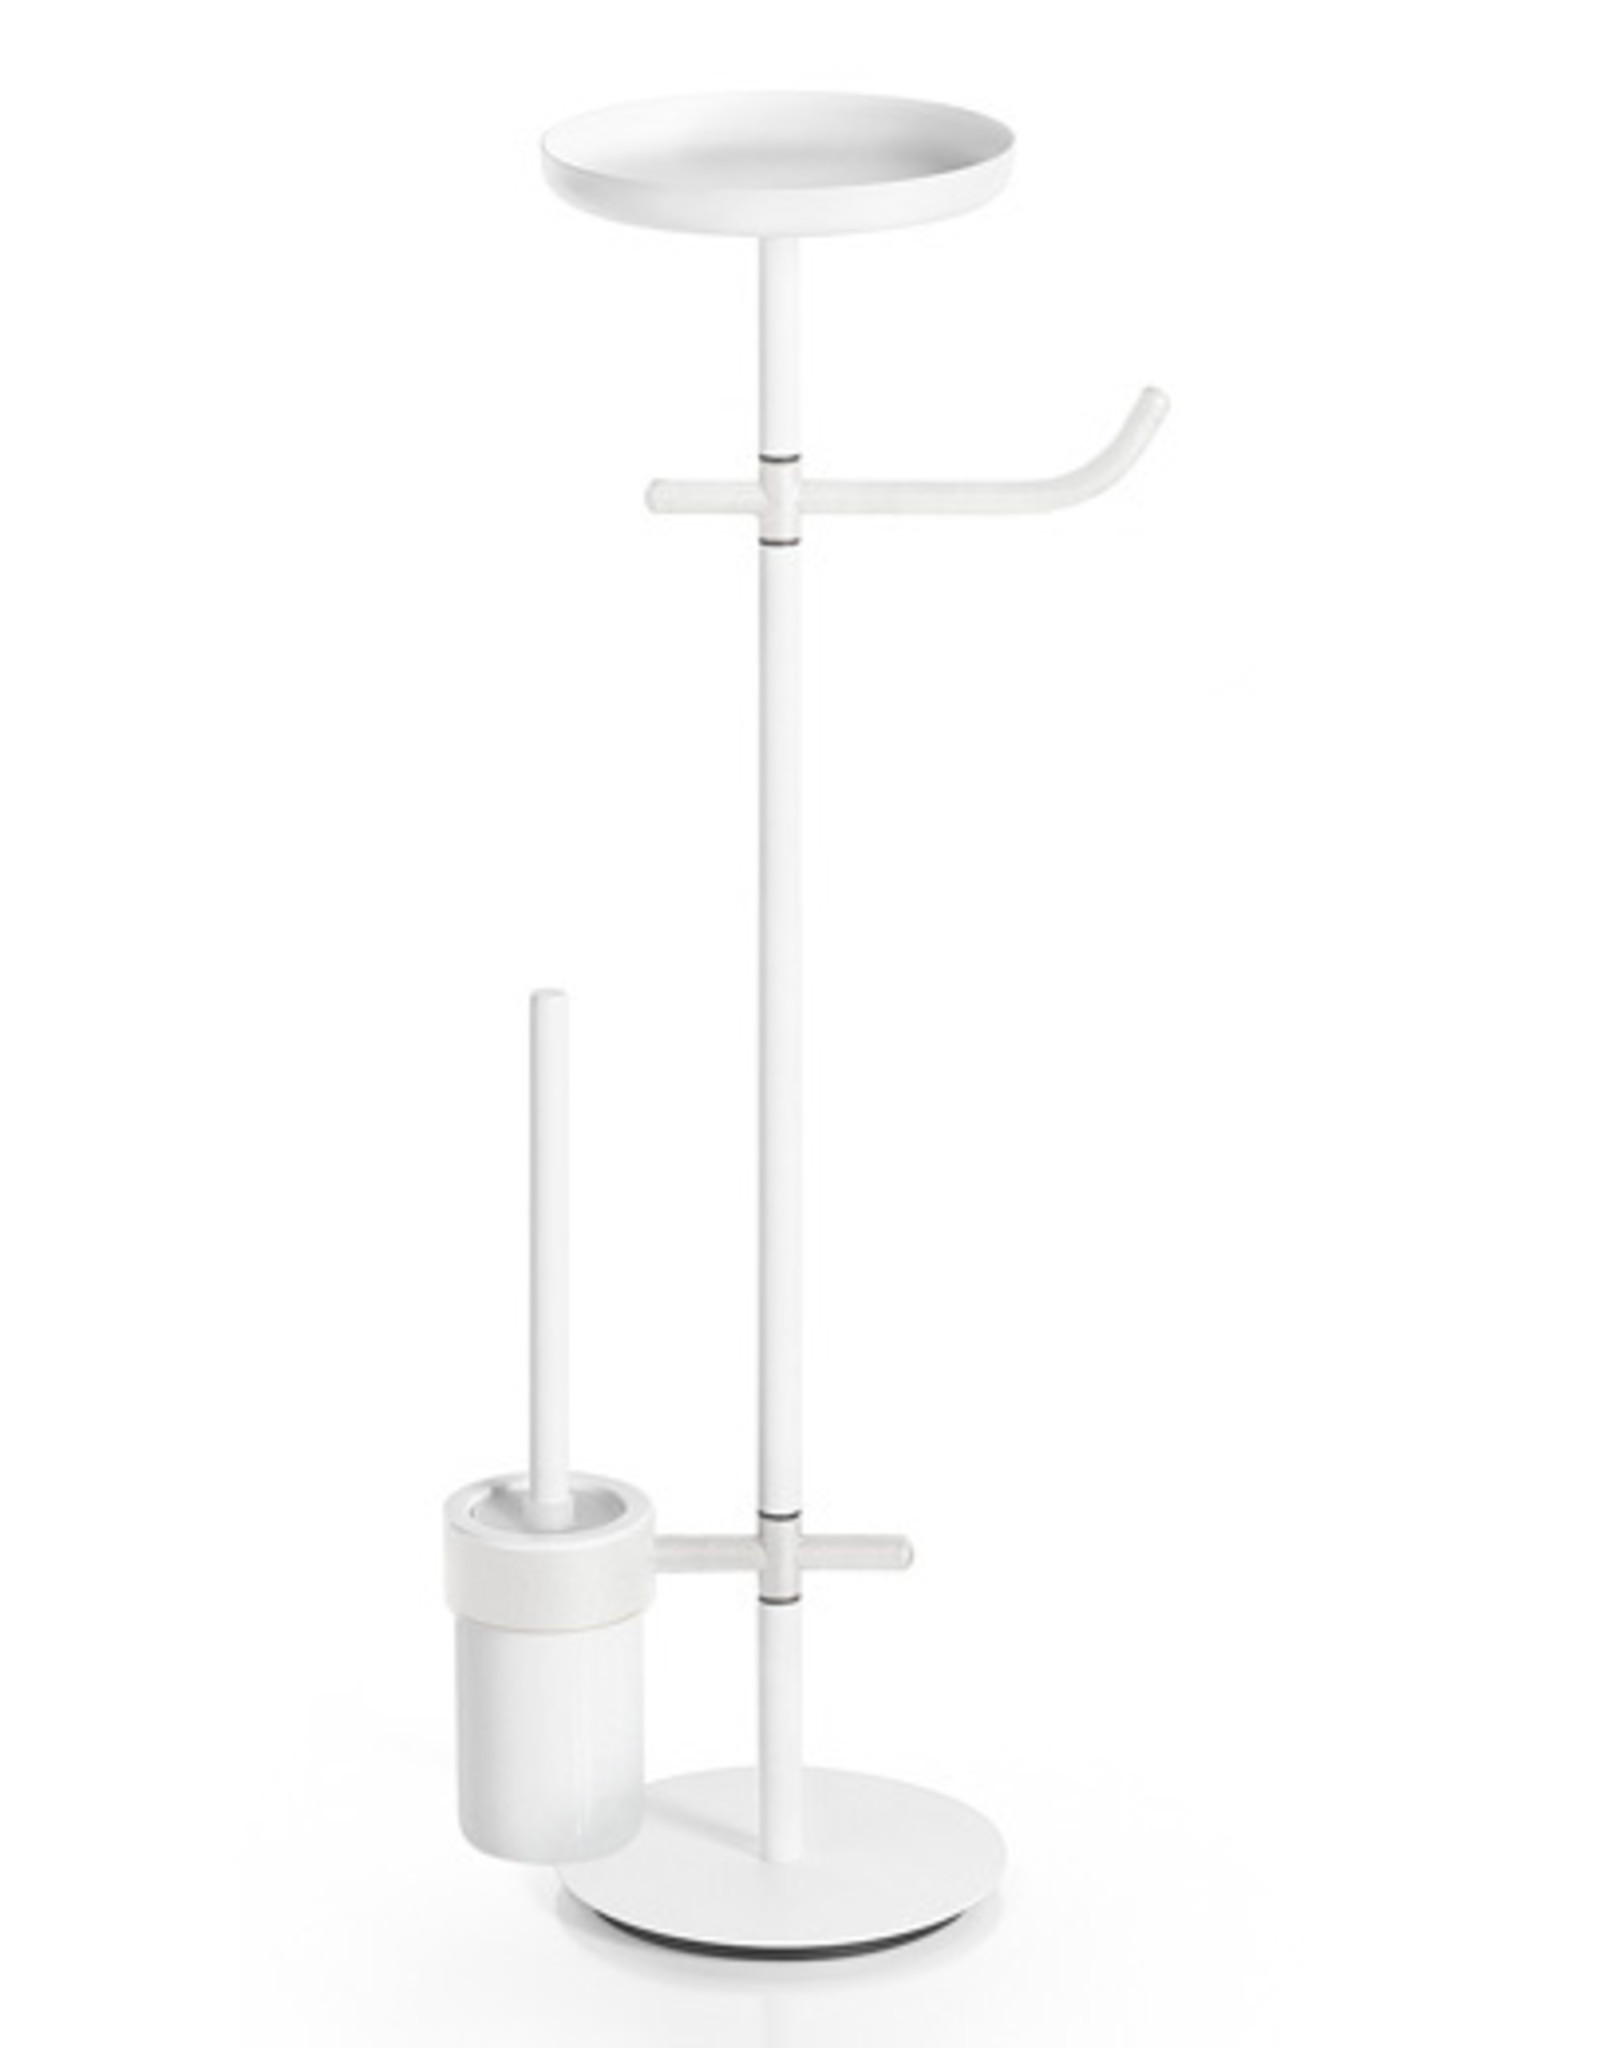 Ranpin toilet set stand, round, white